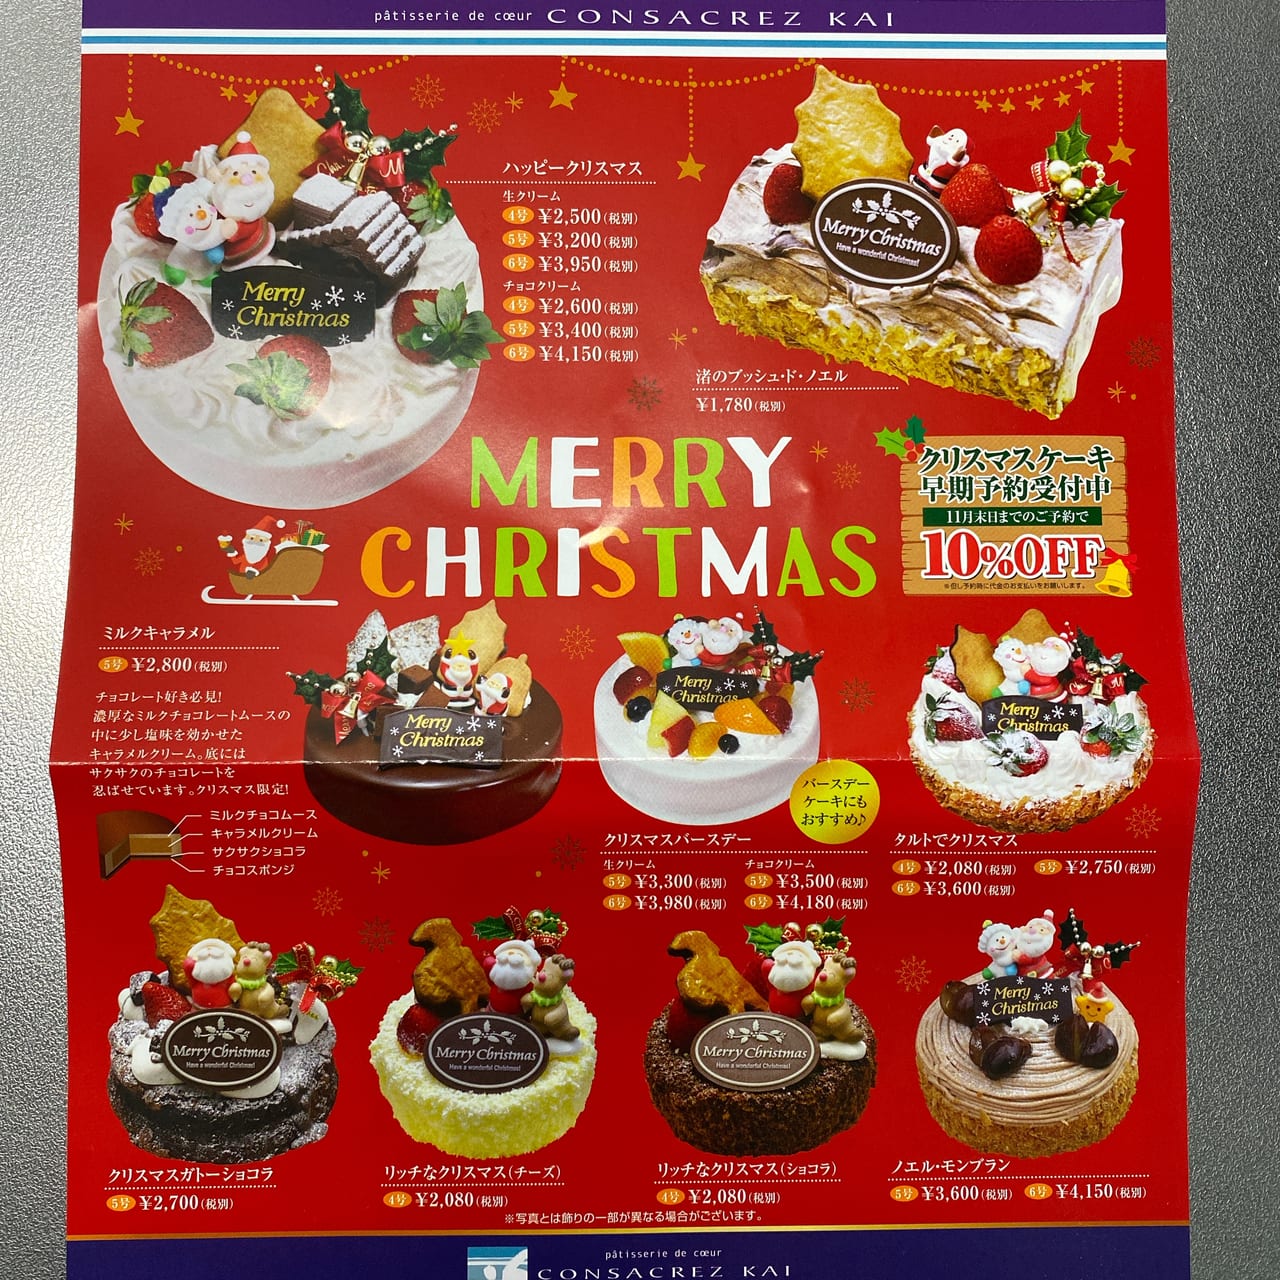 神戸市西区 パティスリー コンサクレ カイ クリスマスケーキの予約が始まっています 早割もありますよ 号外net 神戸市西区